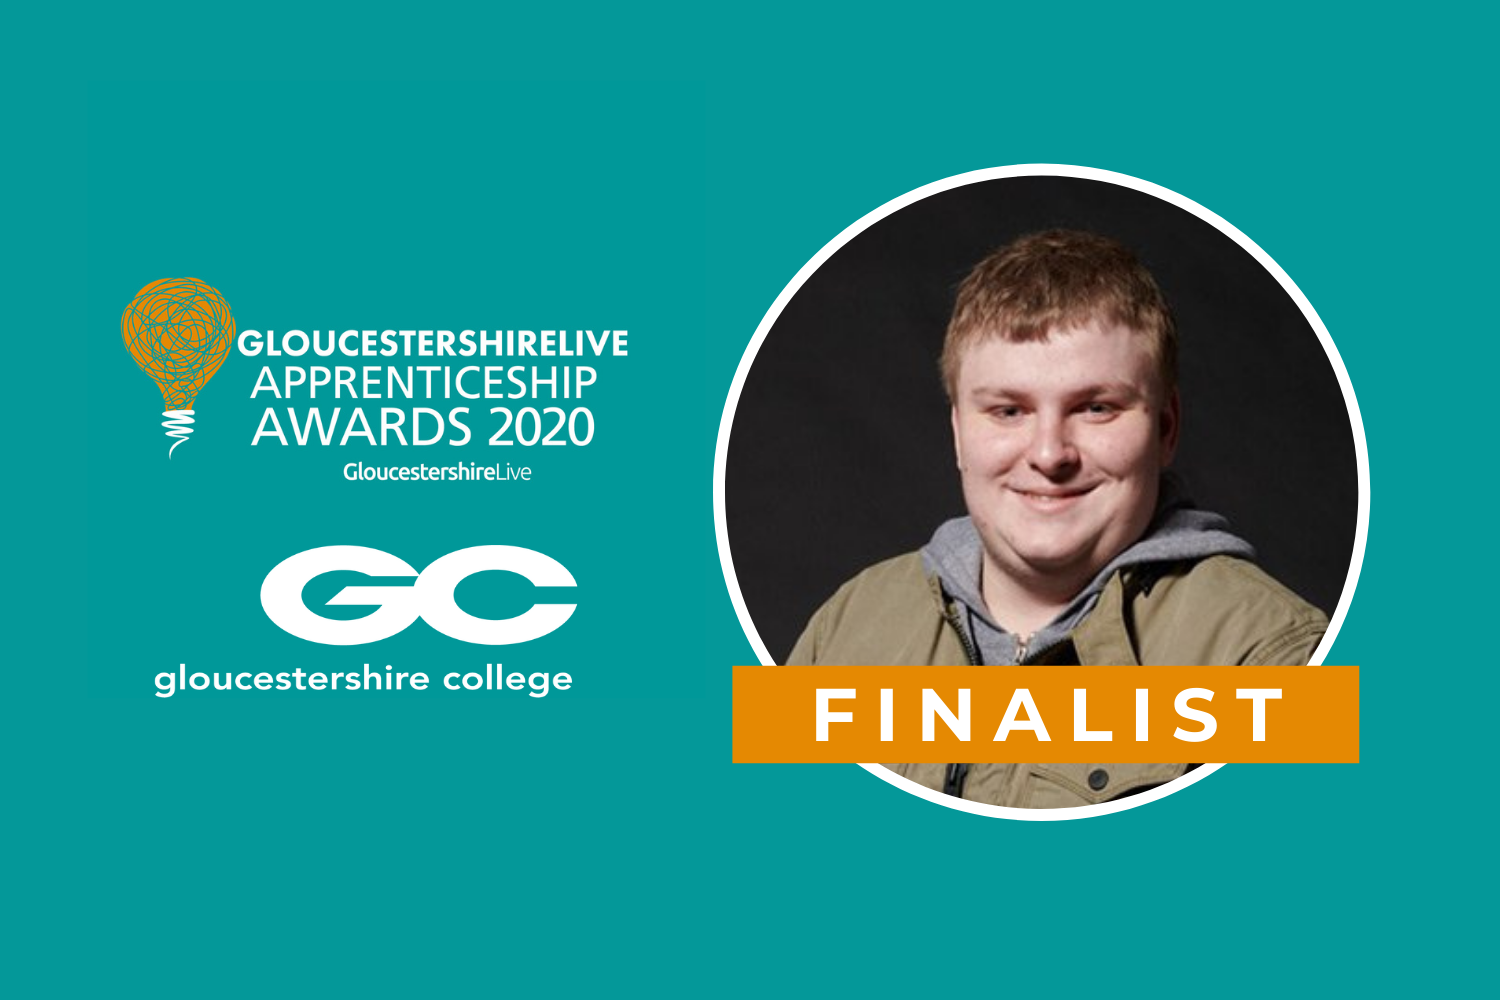 Apprentice Spotlight: Carl Eustace, GloucestershireLive Apprenticeship Awards 2020 Finalist